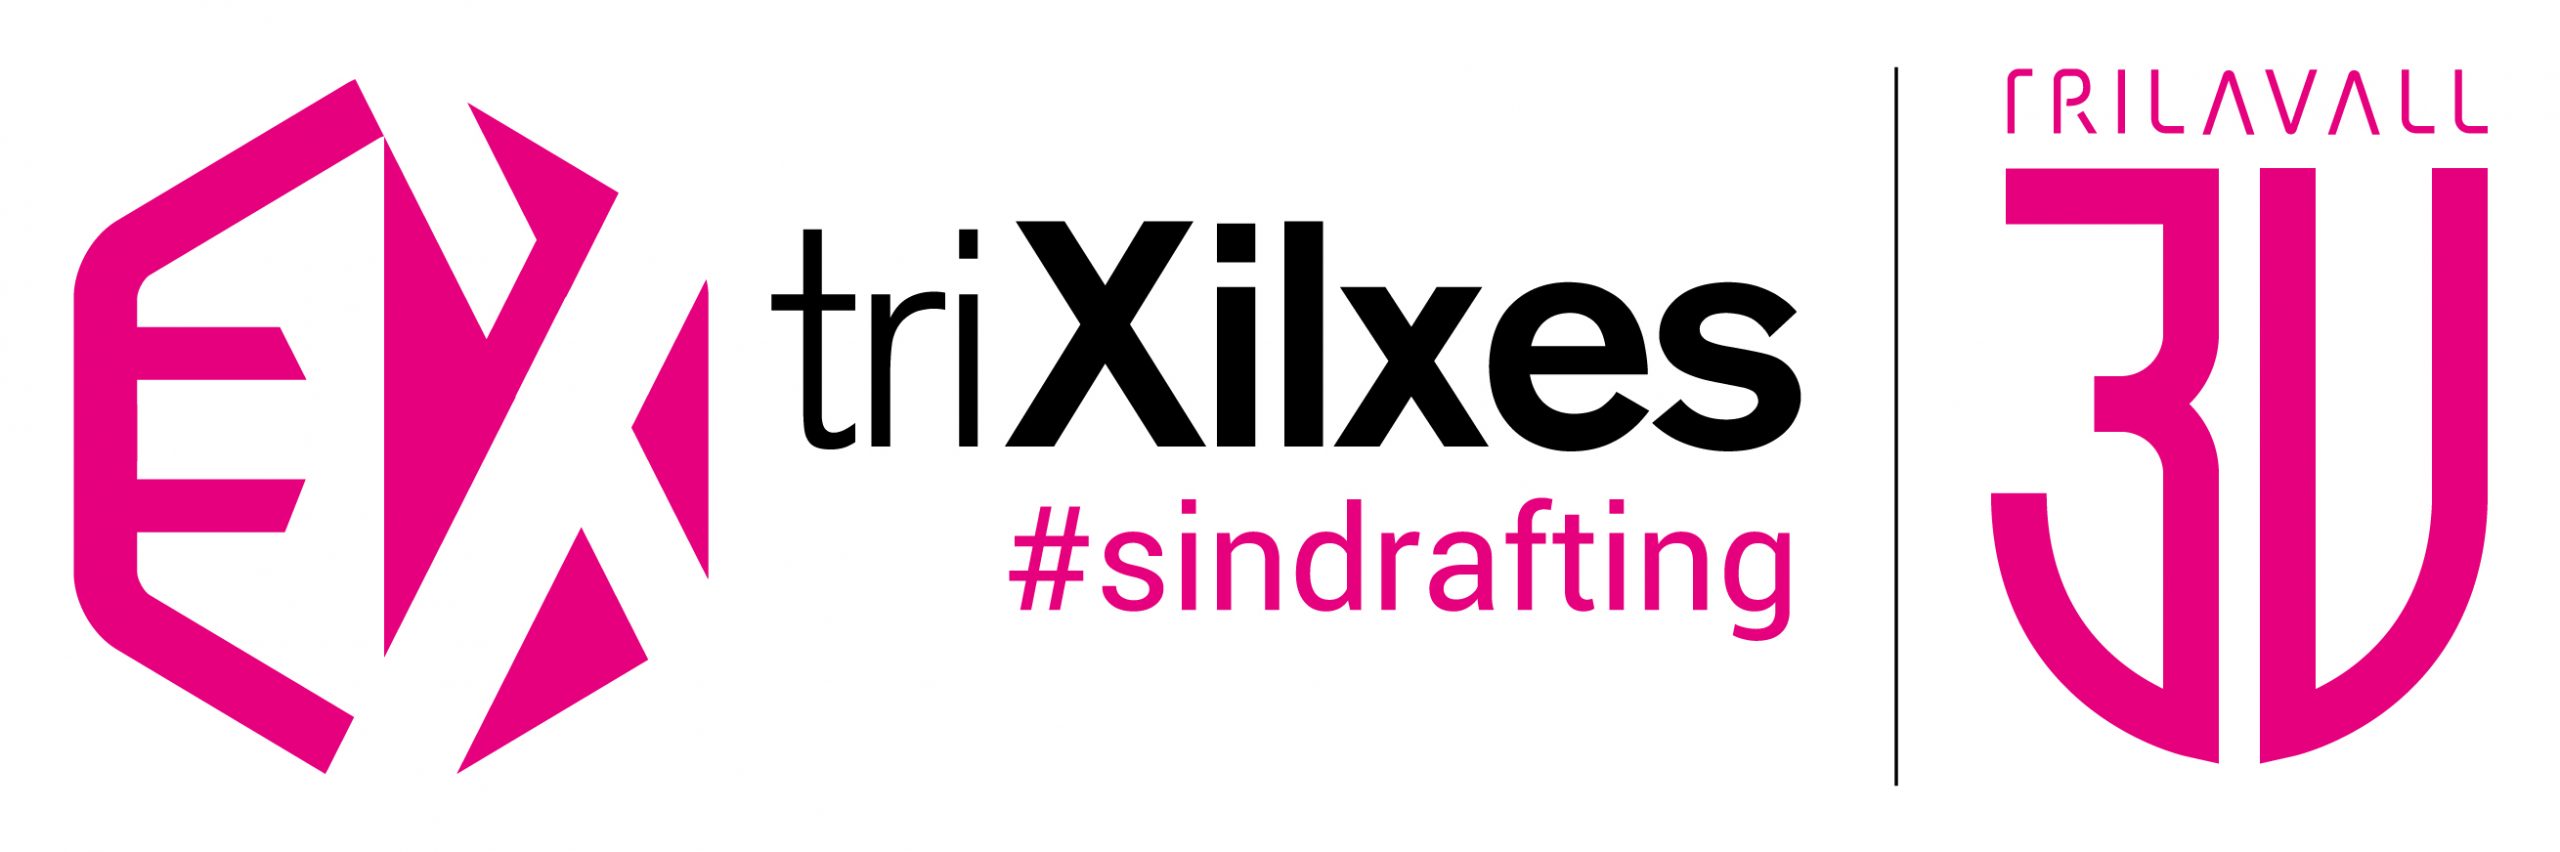 triXilxes.com #sindrafting